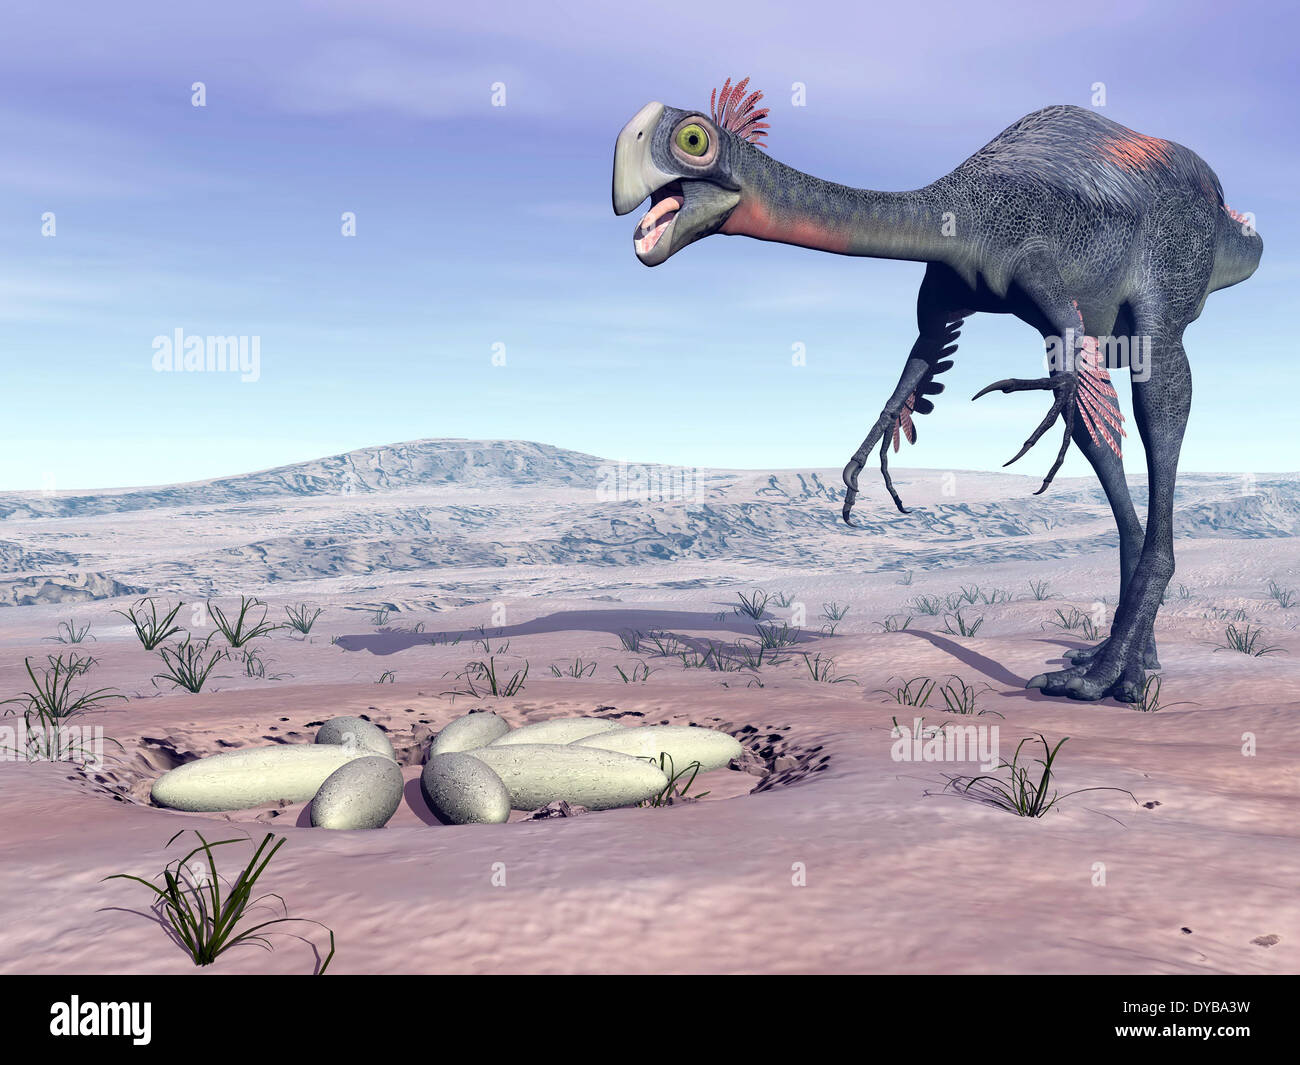 Female Gigantoraptor dinosaur walking to its nest full of eggs in the desert. Stock Photo